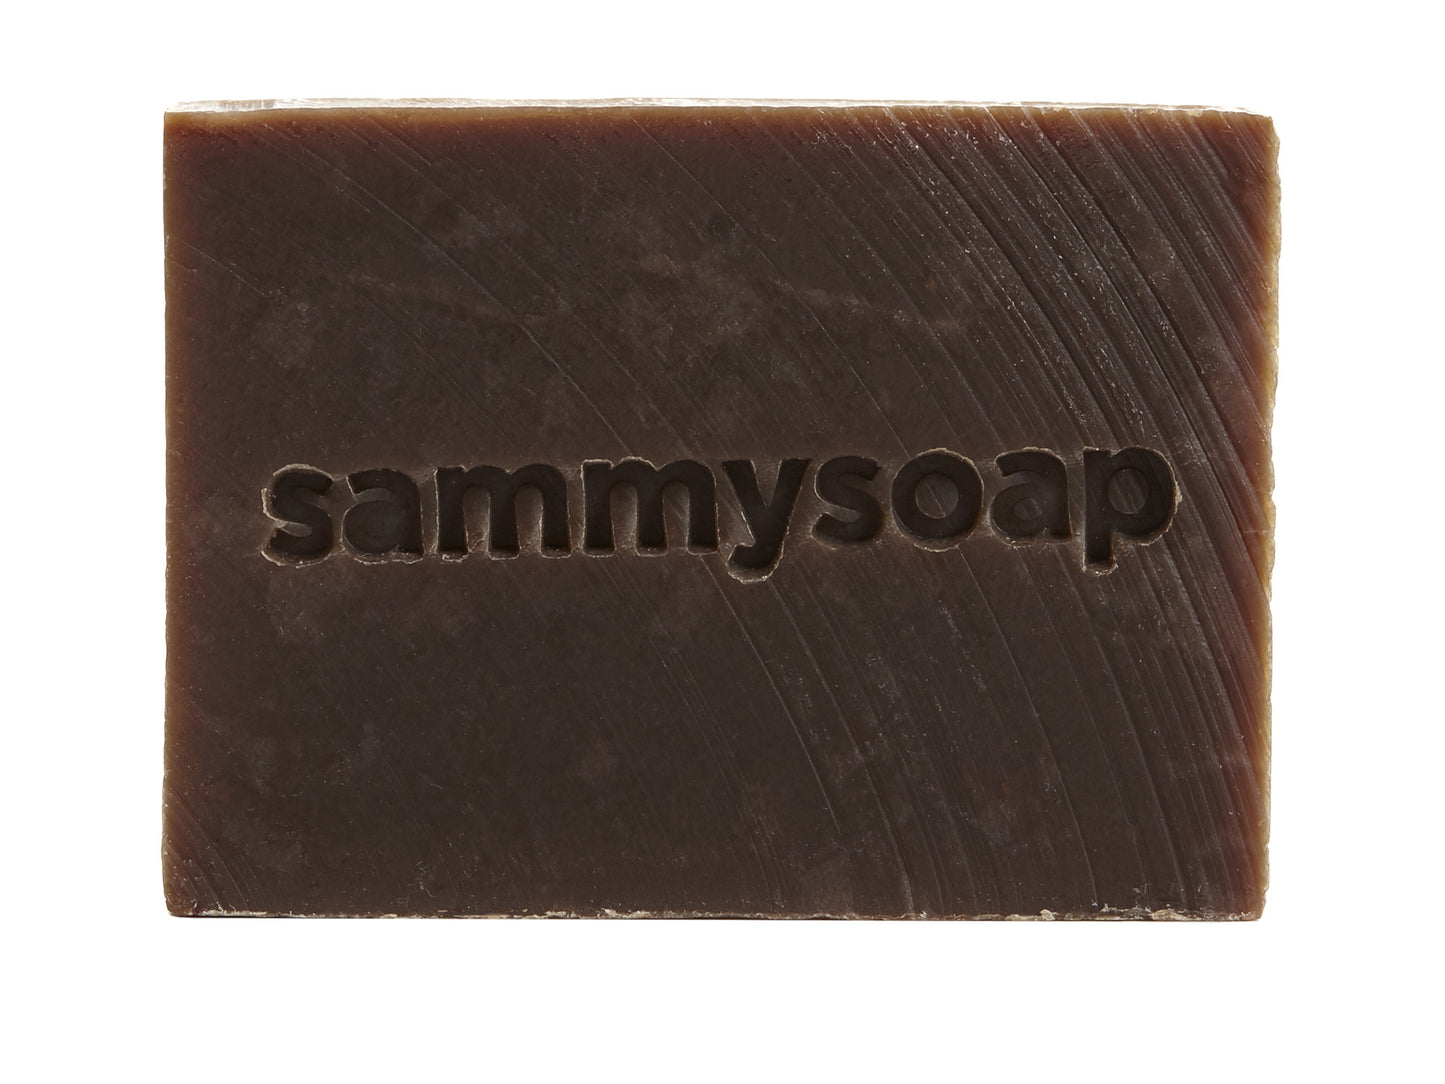 XOXO Cacao Soap